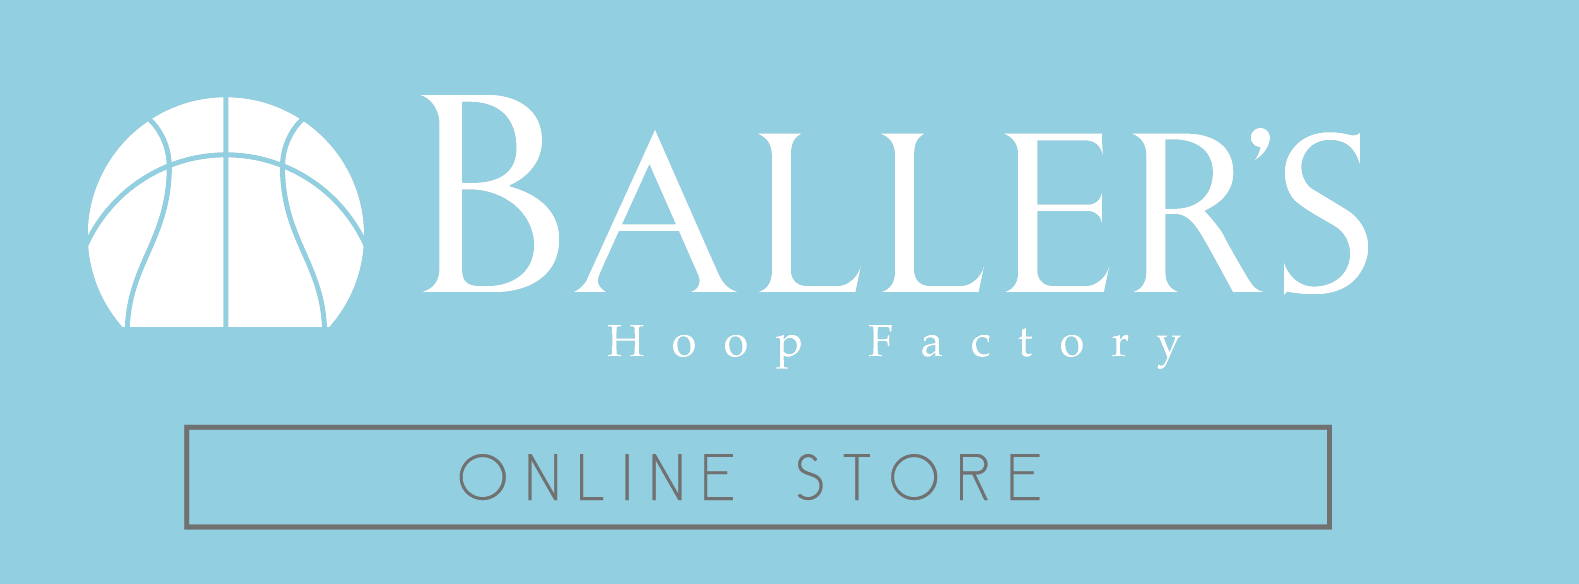 【BALLER'S Hoop Factory】